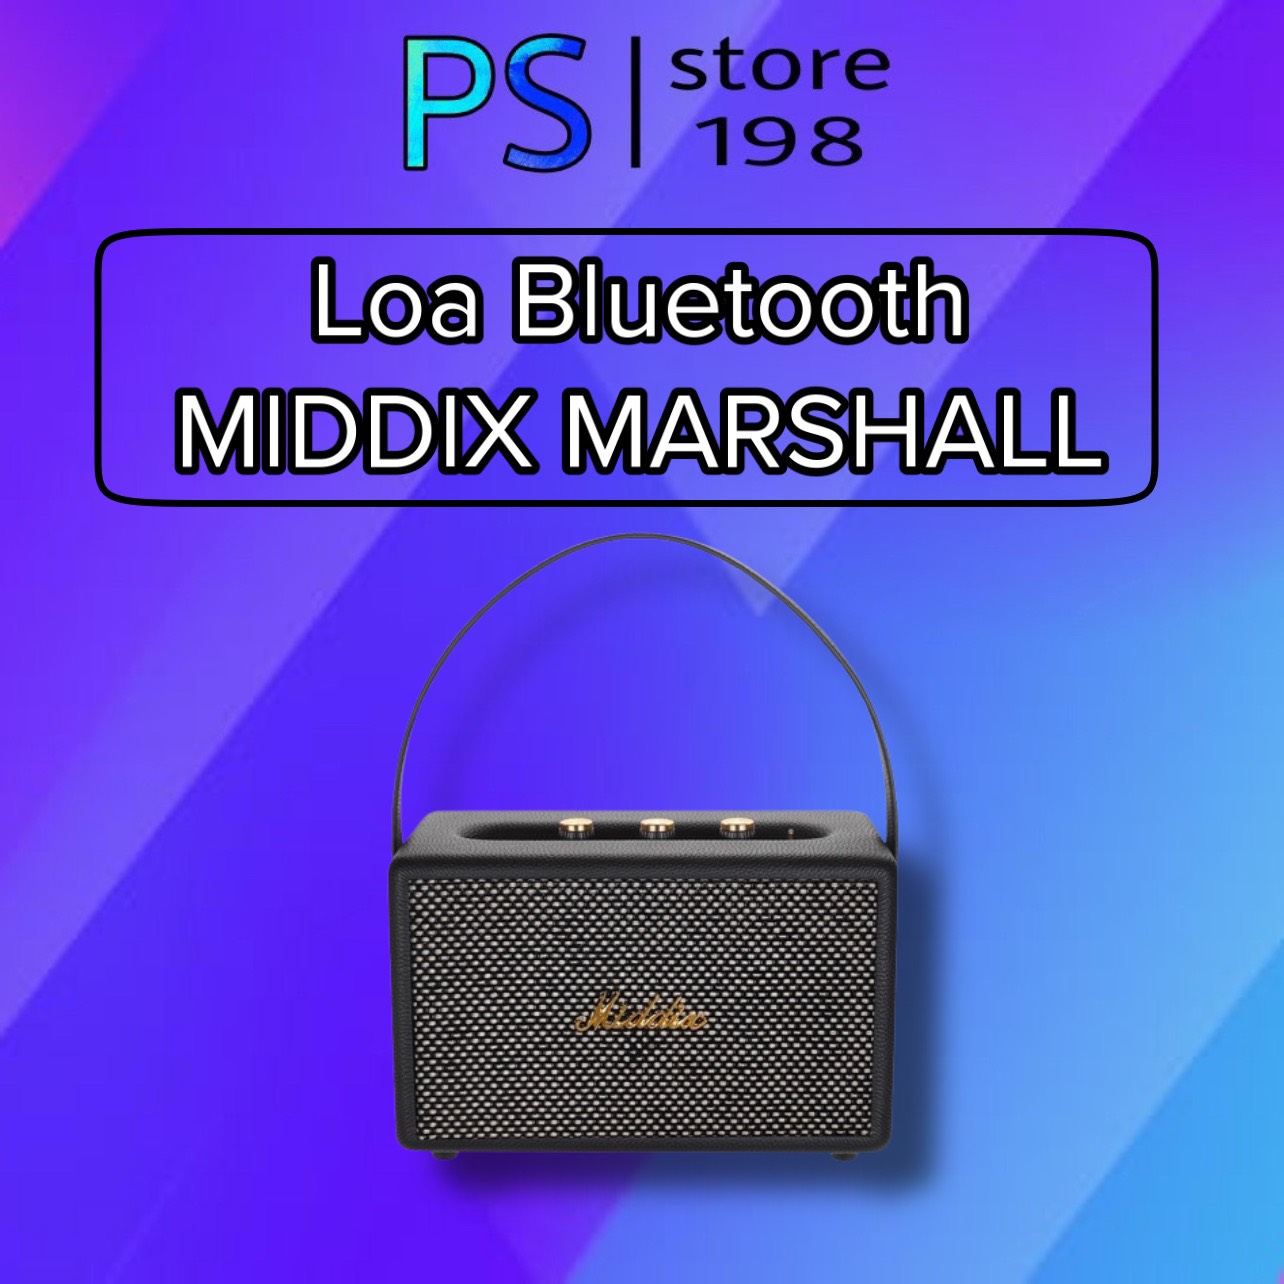 Loa Bluetooth MIDDIX MARSHALL Âm Thanh Sống Động Thiết Kế Bọc Da Kiểu Dáng Phong Cách